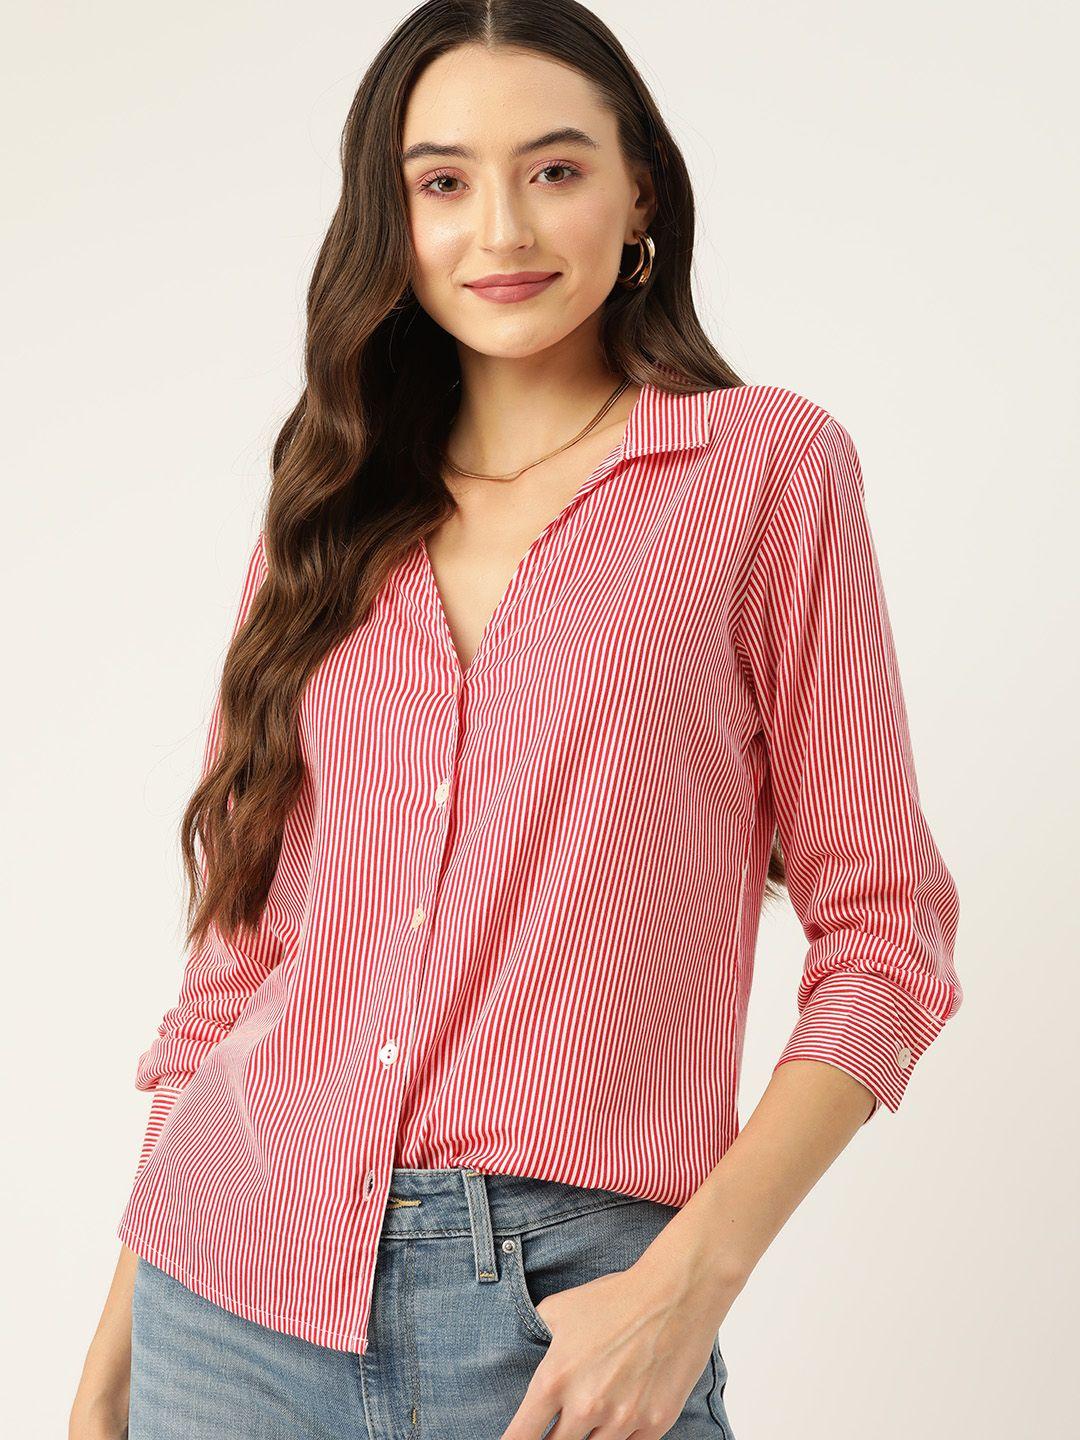 dressberry women original pinstripes cotton casual shirt